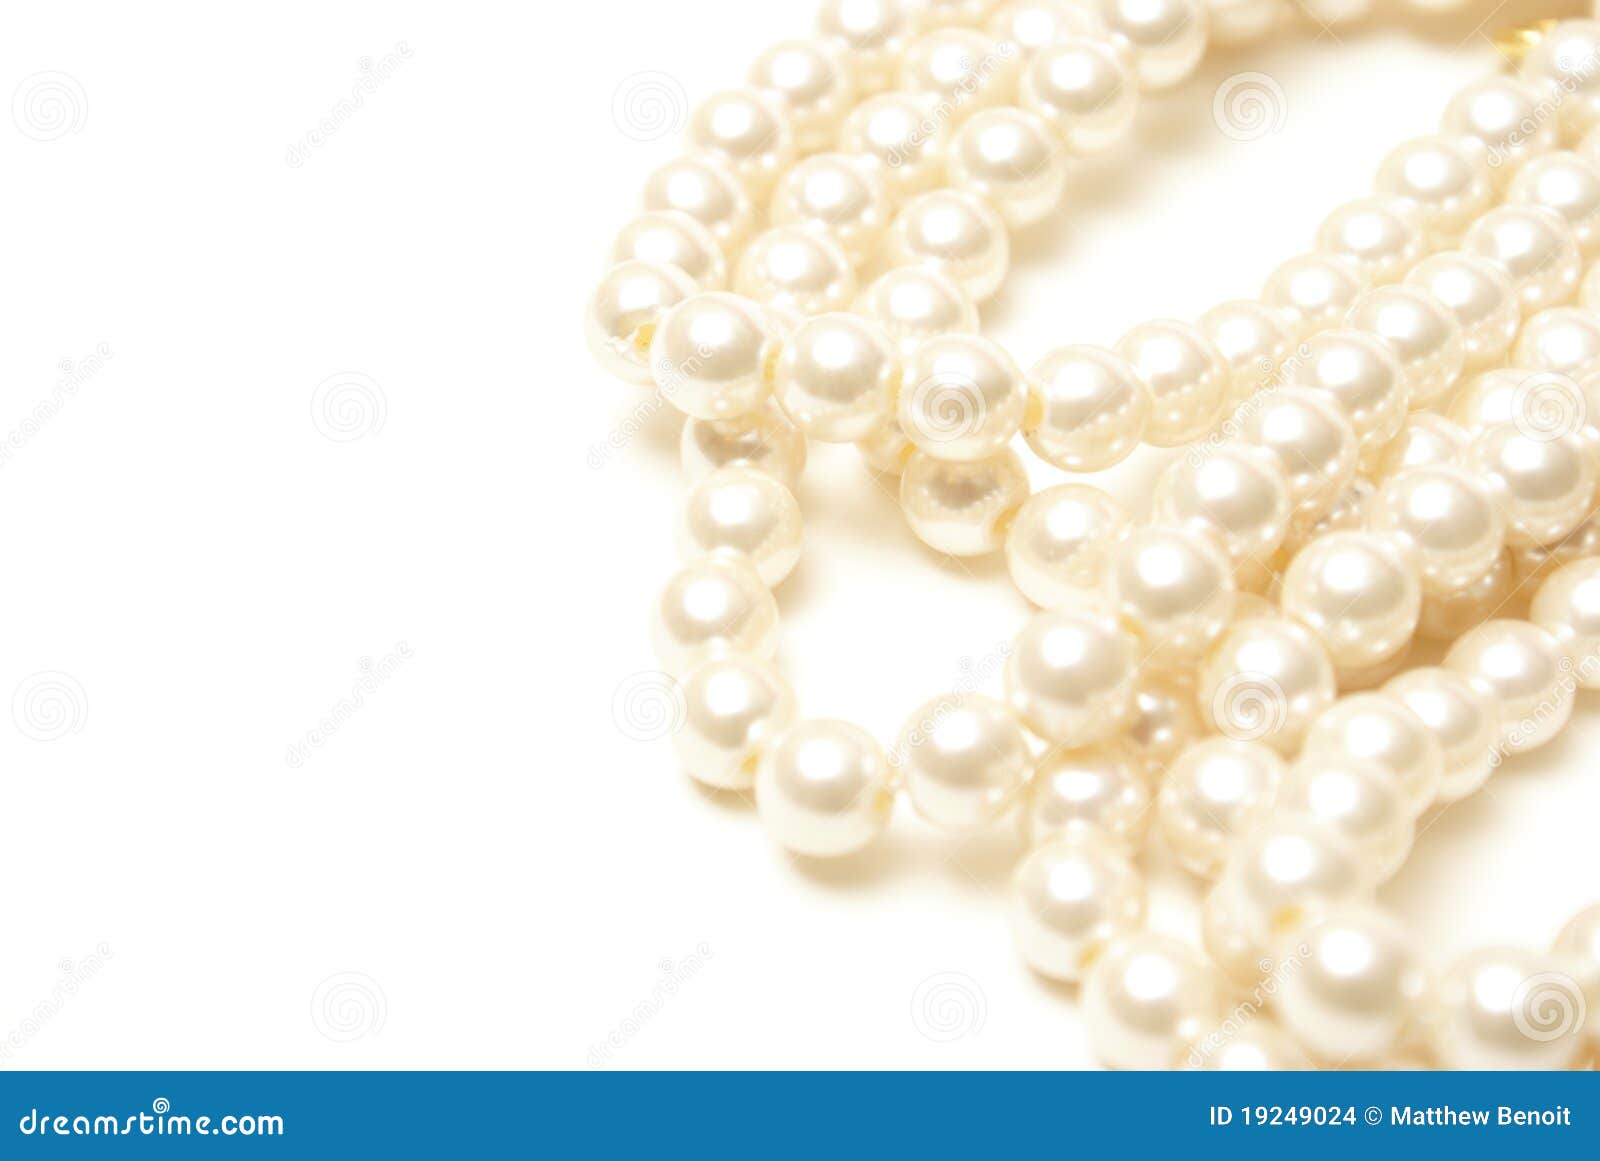 Perline in plastica 5 x 5 mm EFCO Photo Pearls bianco numero 15 1100 pezzi 